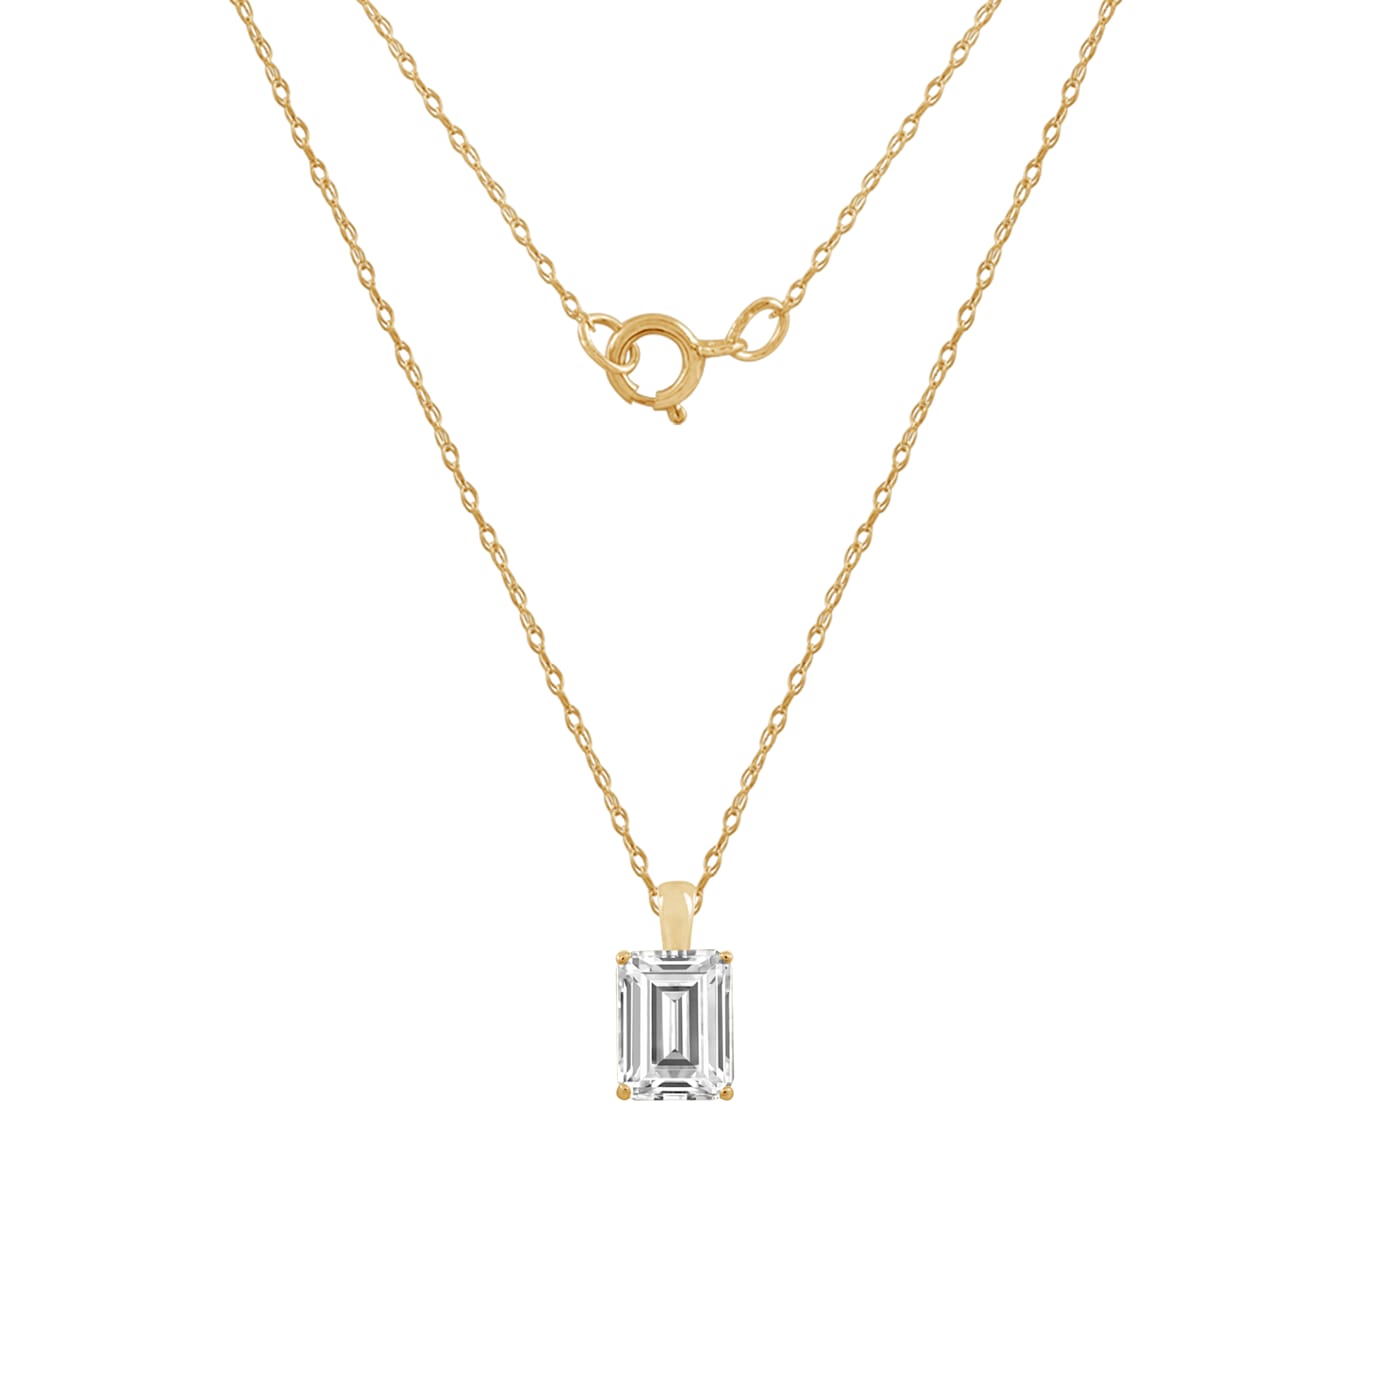 Emerald Cut Diamond Pendant Necklace-SOLD - Sholdt Jewelry Design